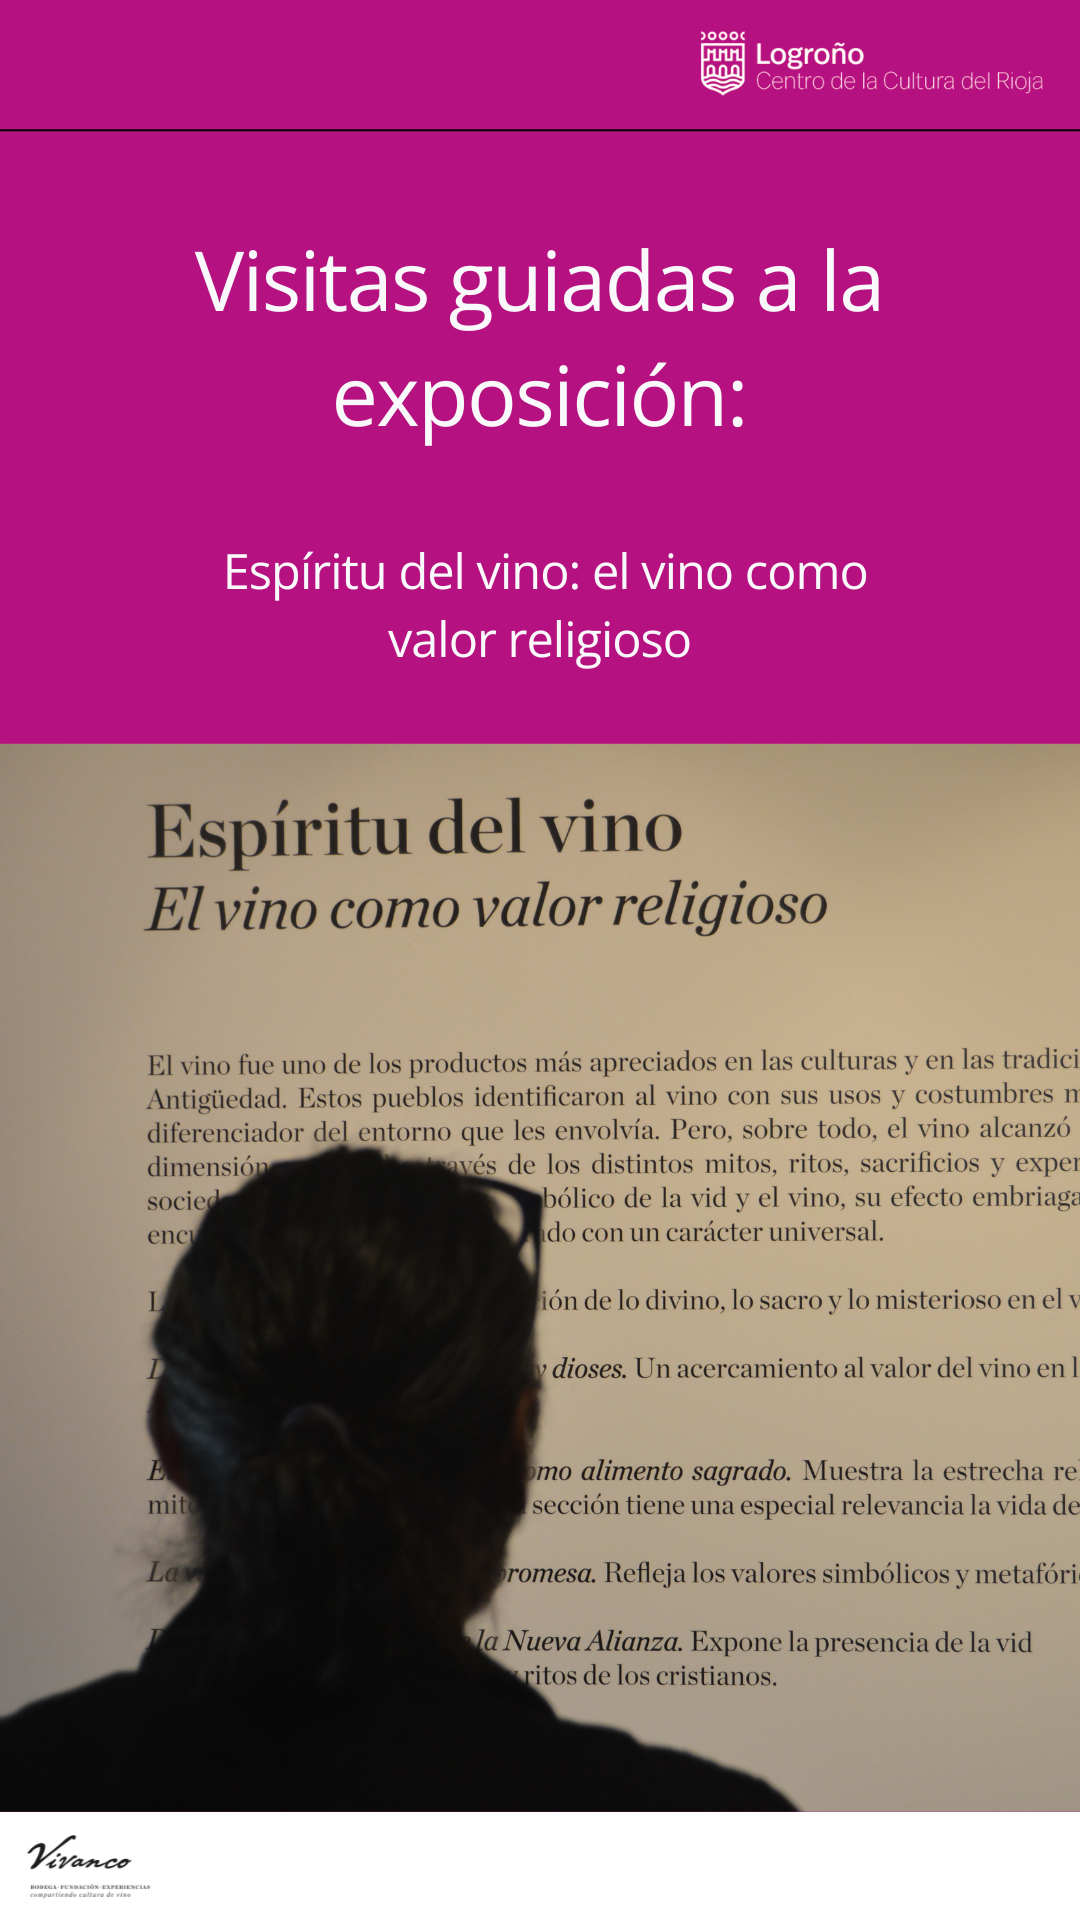 Visitas guiadas a la exposición Espíritu del vino: el vino como valor religioso